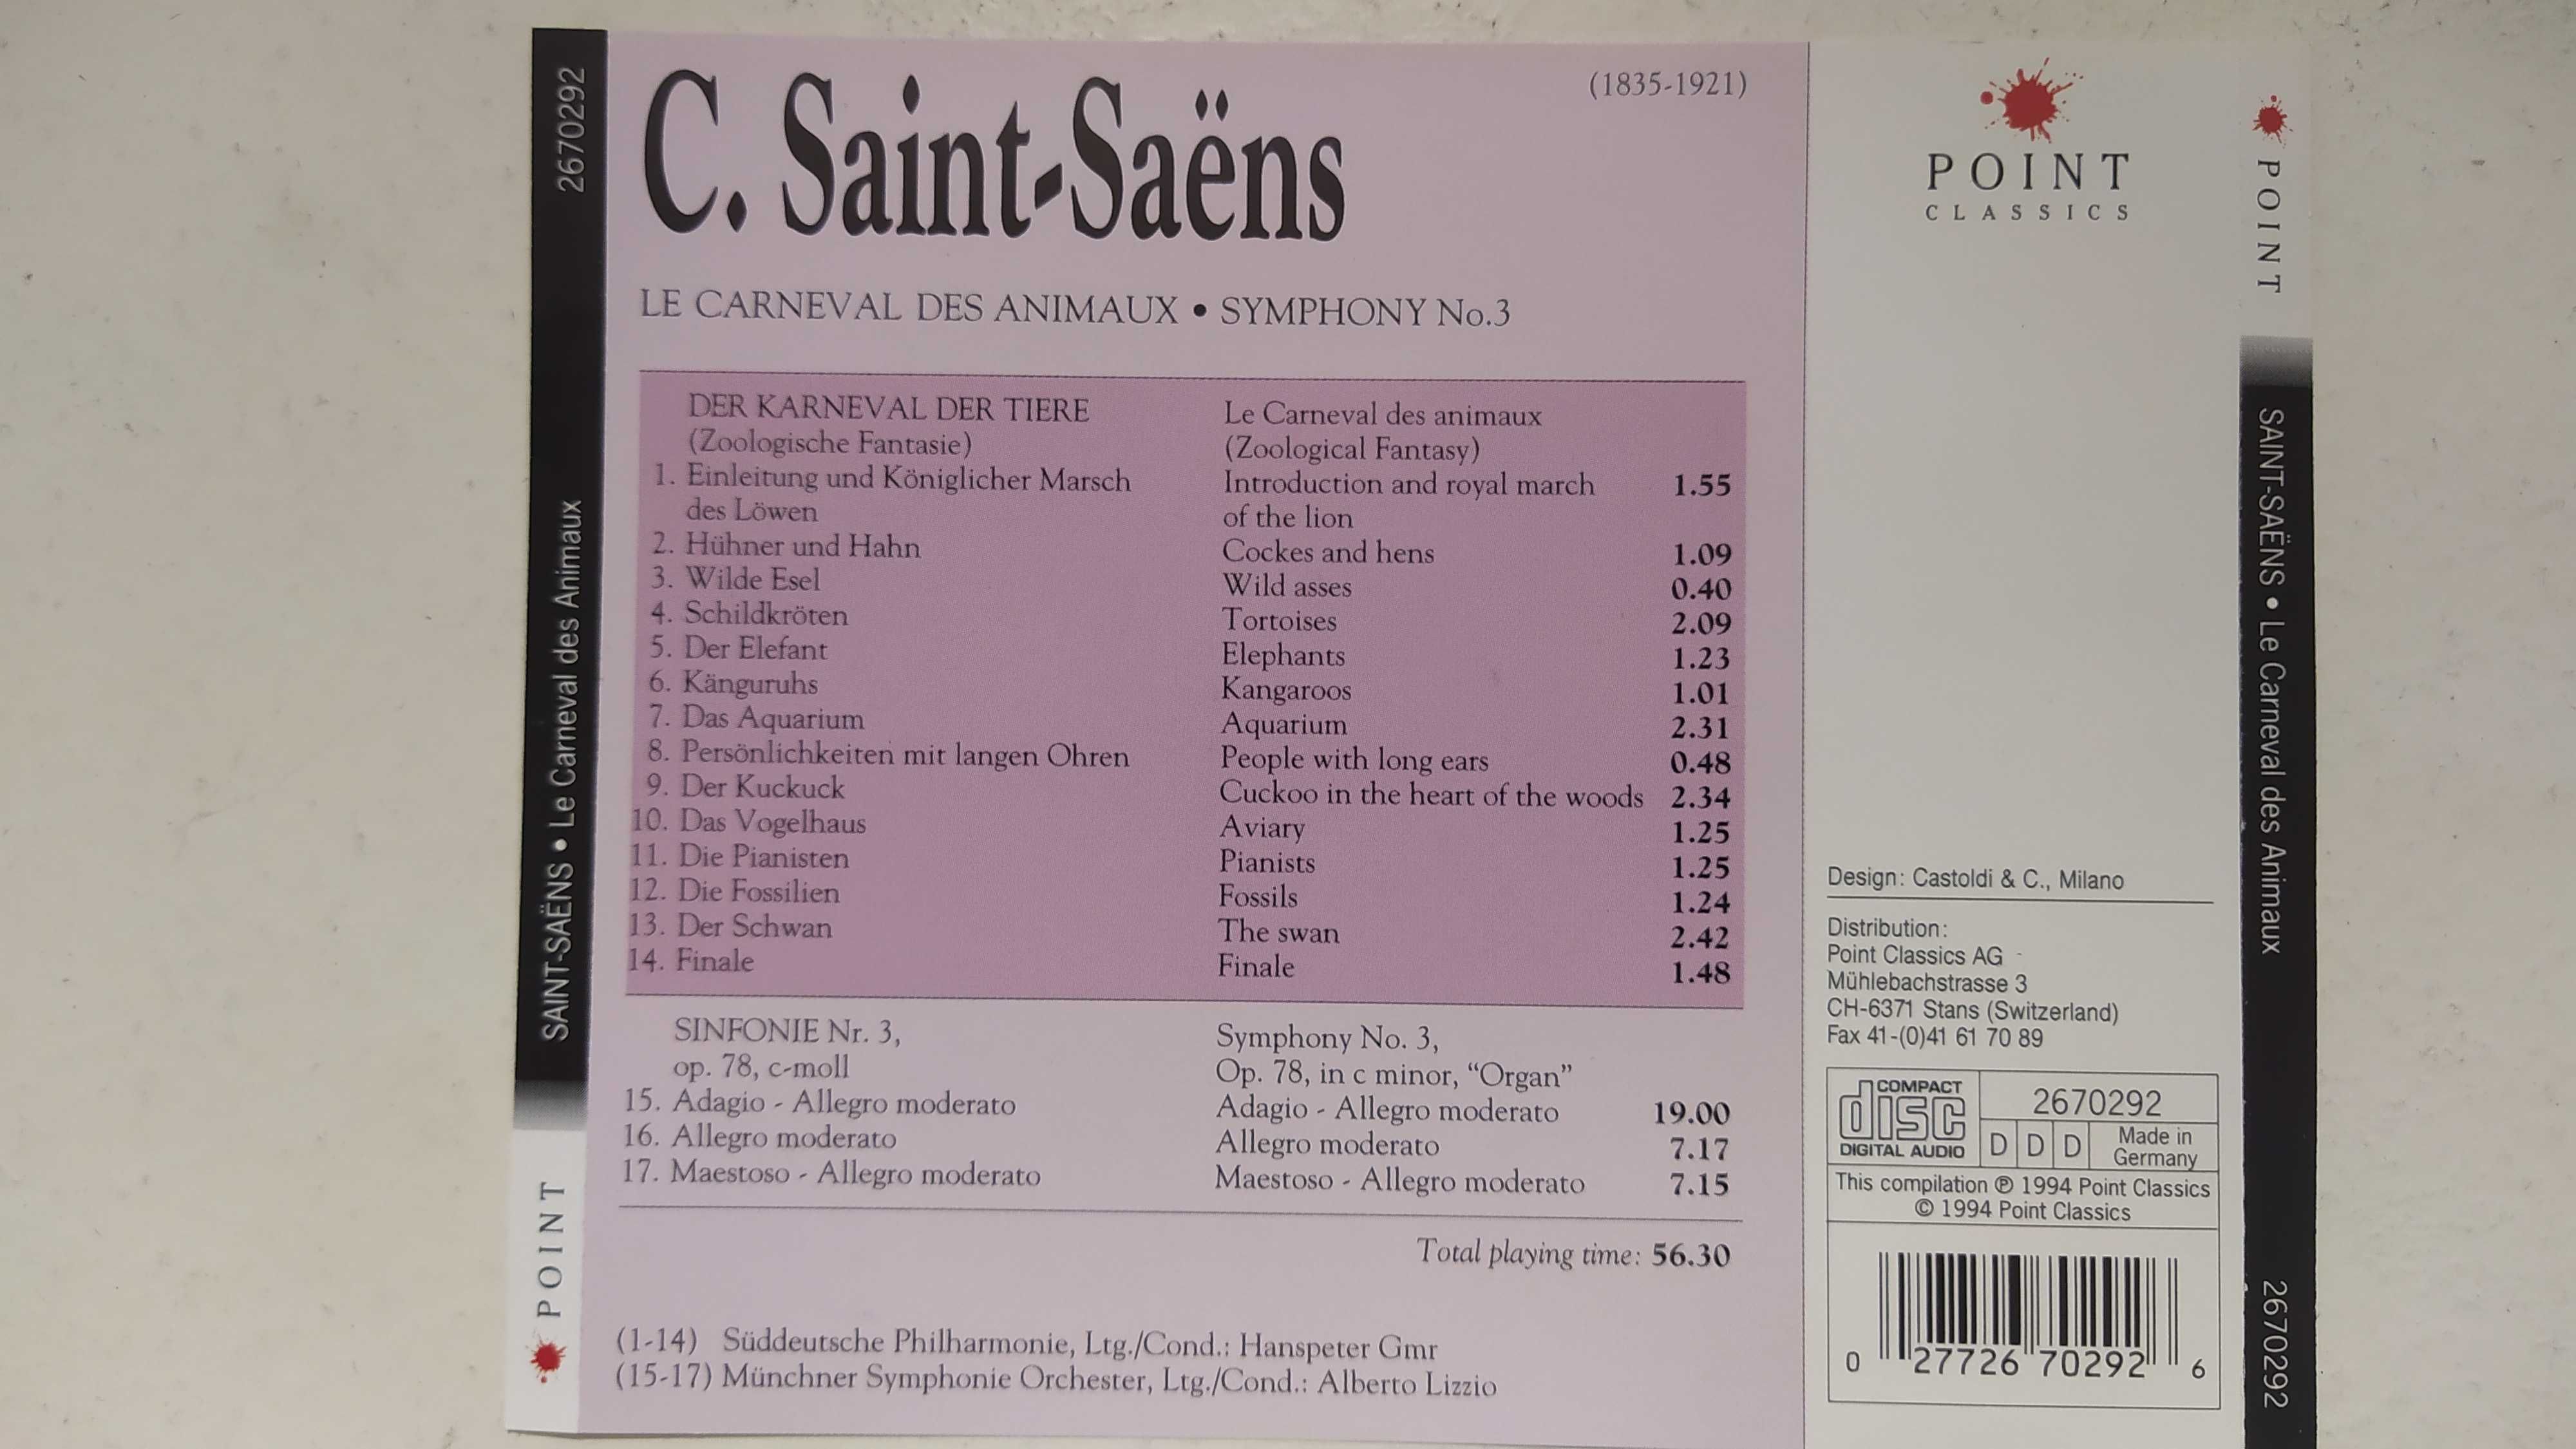 Saint Saens Le Carneval des Animaux Symphony No 3 Organ Point Classics